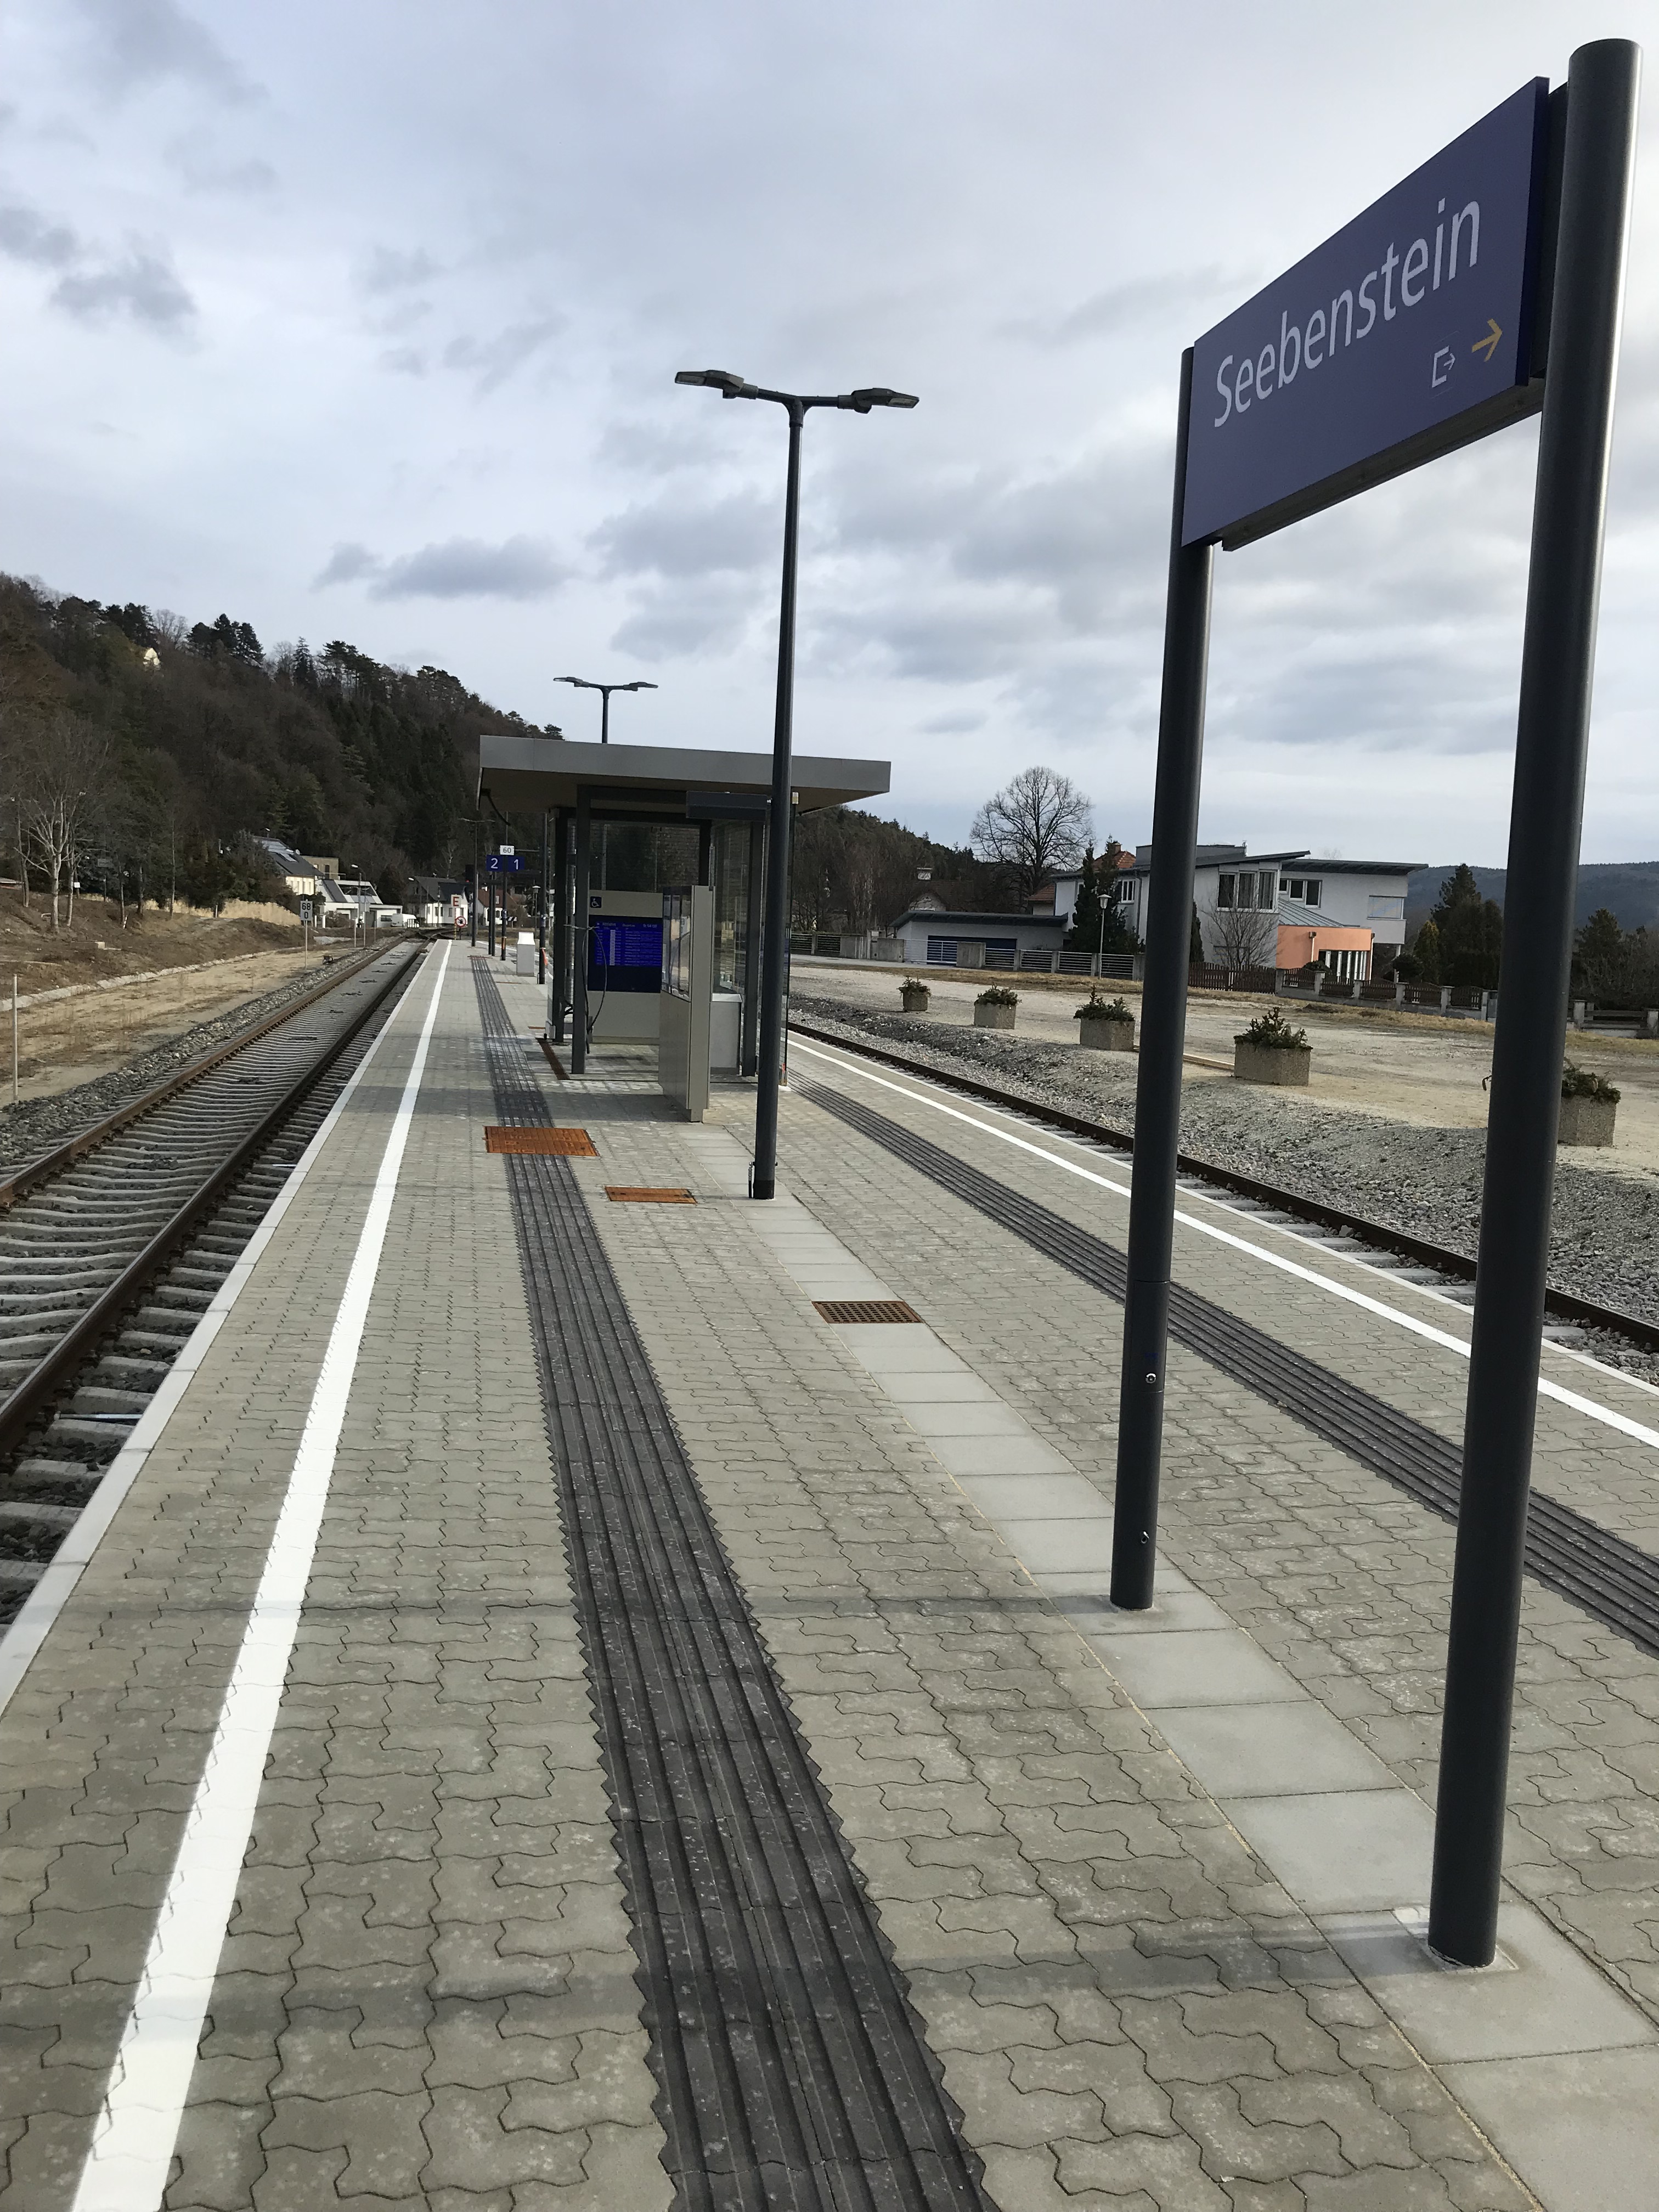 Umbau Bahnhof Seebenstein - Tiefbau